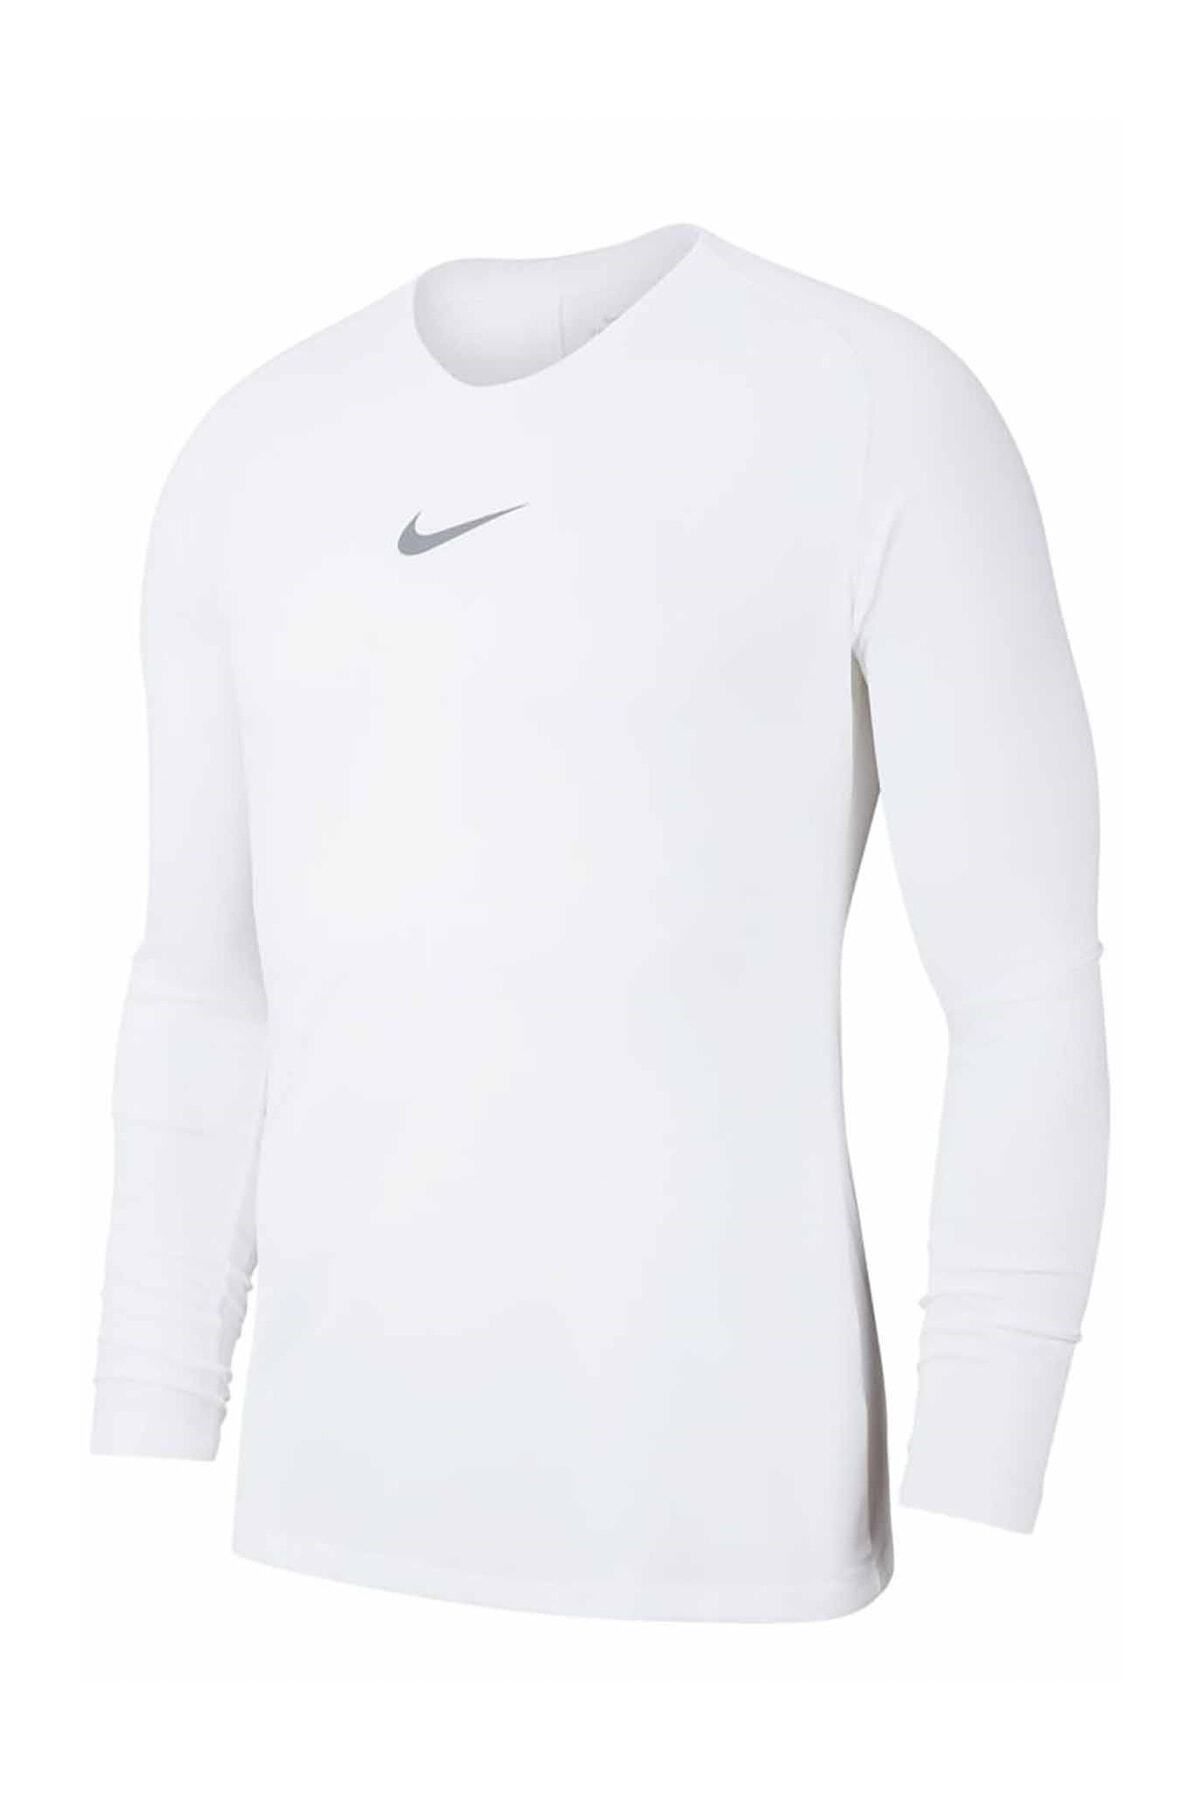 Nike Erkek Beyaz T-shirt Av2609-100 N-100